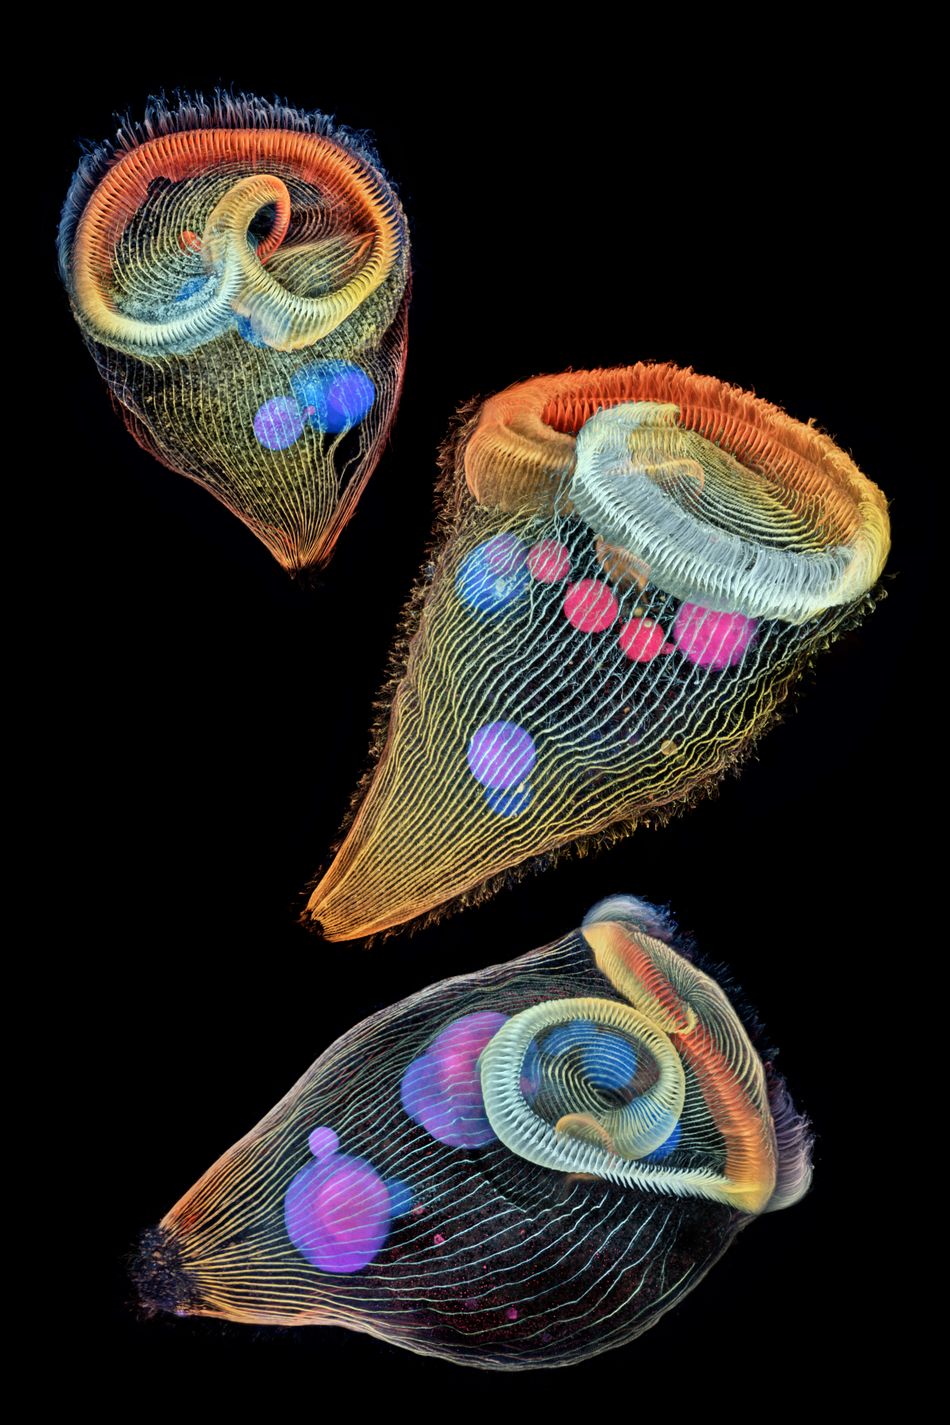 Teeny tiny single-cell freshwater protozoans.